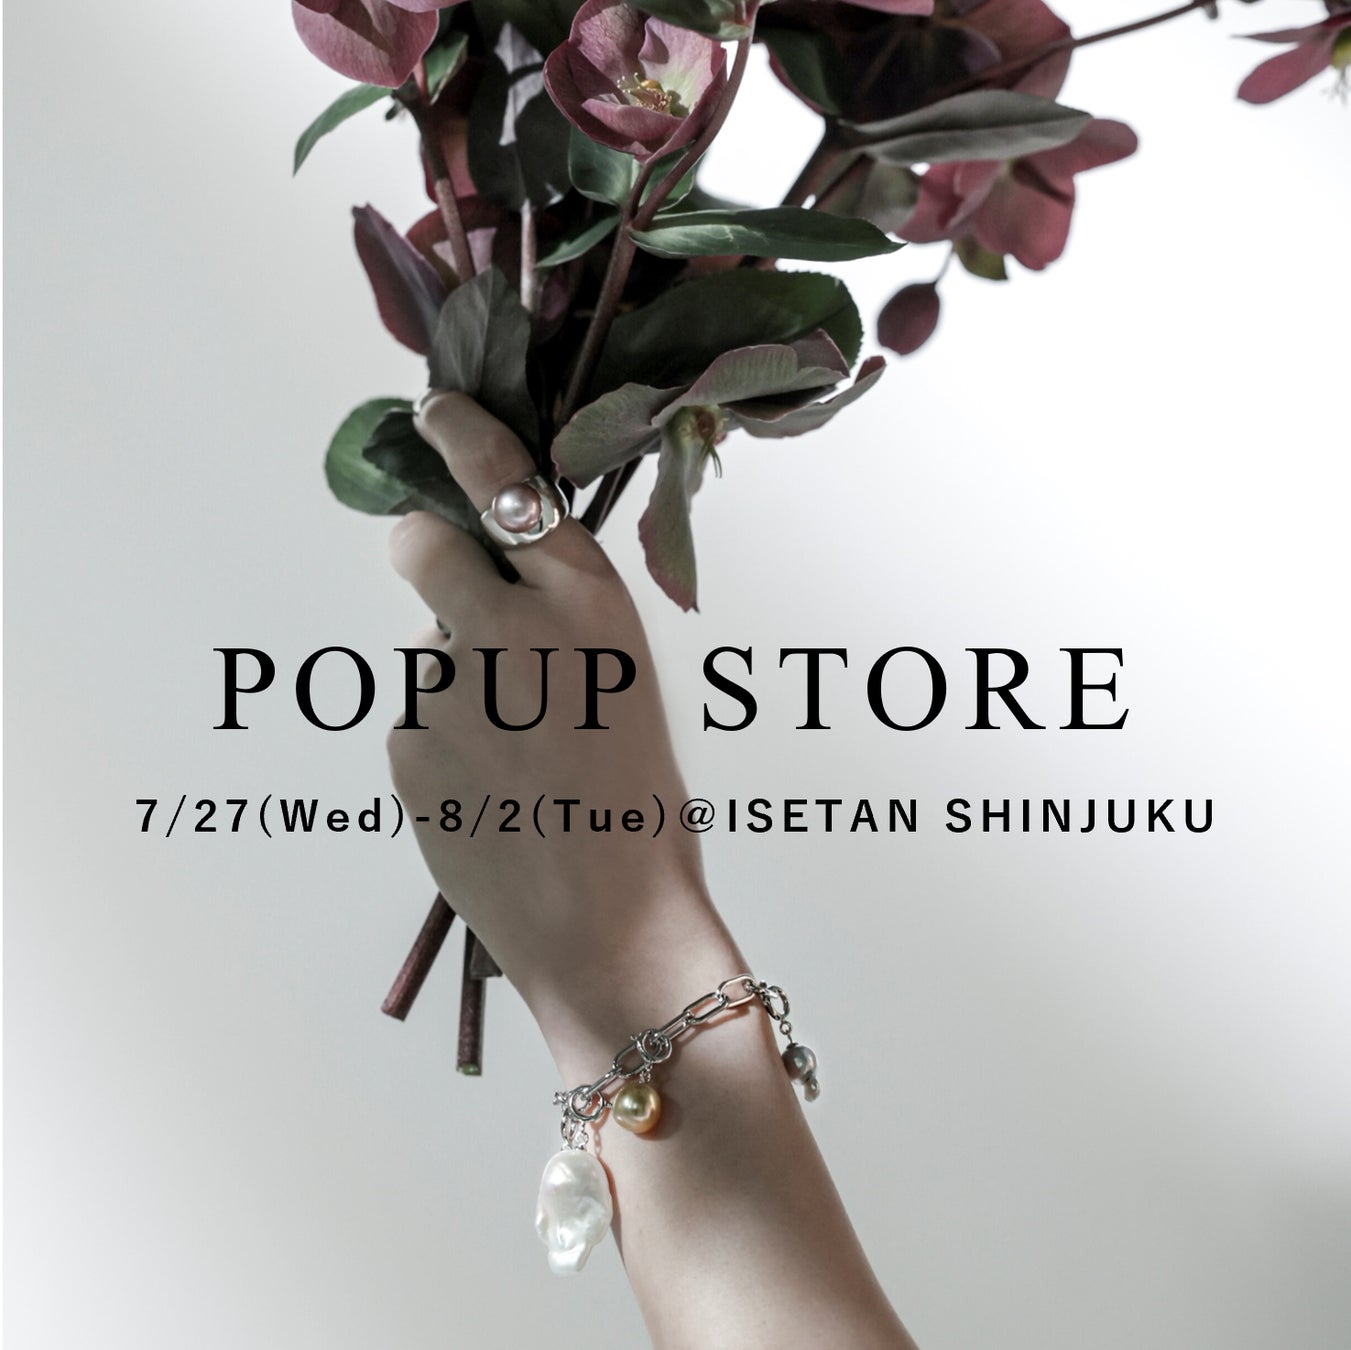 真珠の卸を手掛ける(株)WSP発のジュエリーブランド〈MARLENA〉とコスメブランド〈madama・hada(真珠肌)〉が、伊勢丹新宿店にてPOPUP STOREを出店。